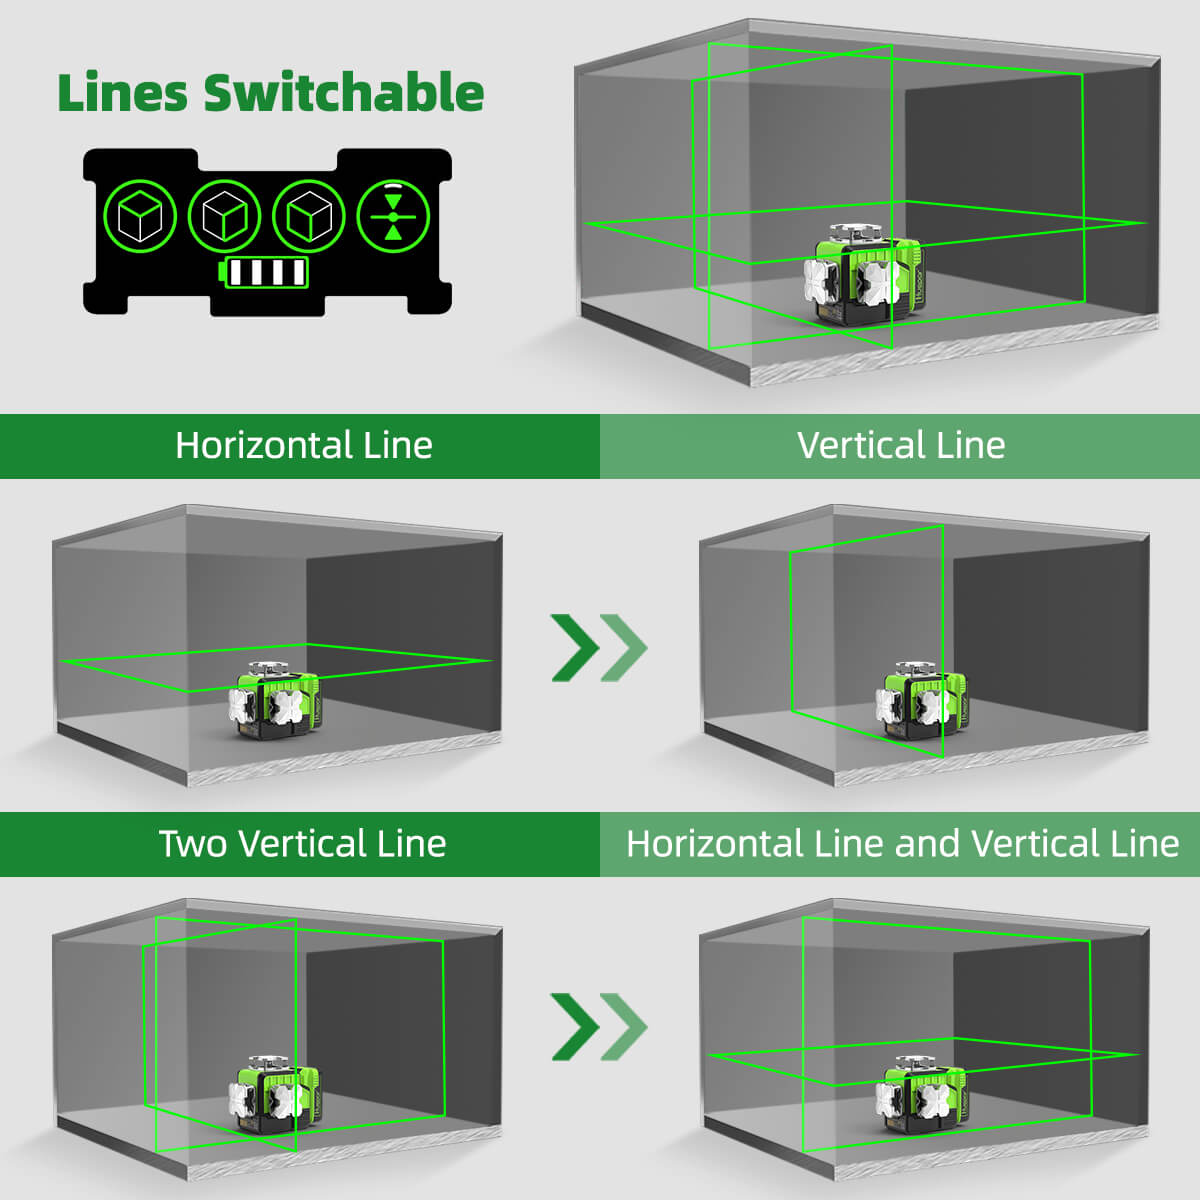 Huepar - Láser de línea cruzada – Nivel láser de línea horizontal y  vertical de haz verde autonivelante con visibilidad de 100 pies, líneas  láser